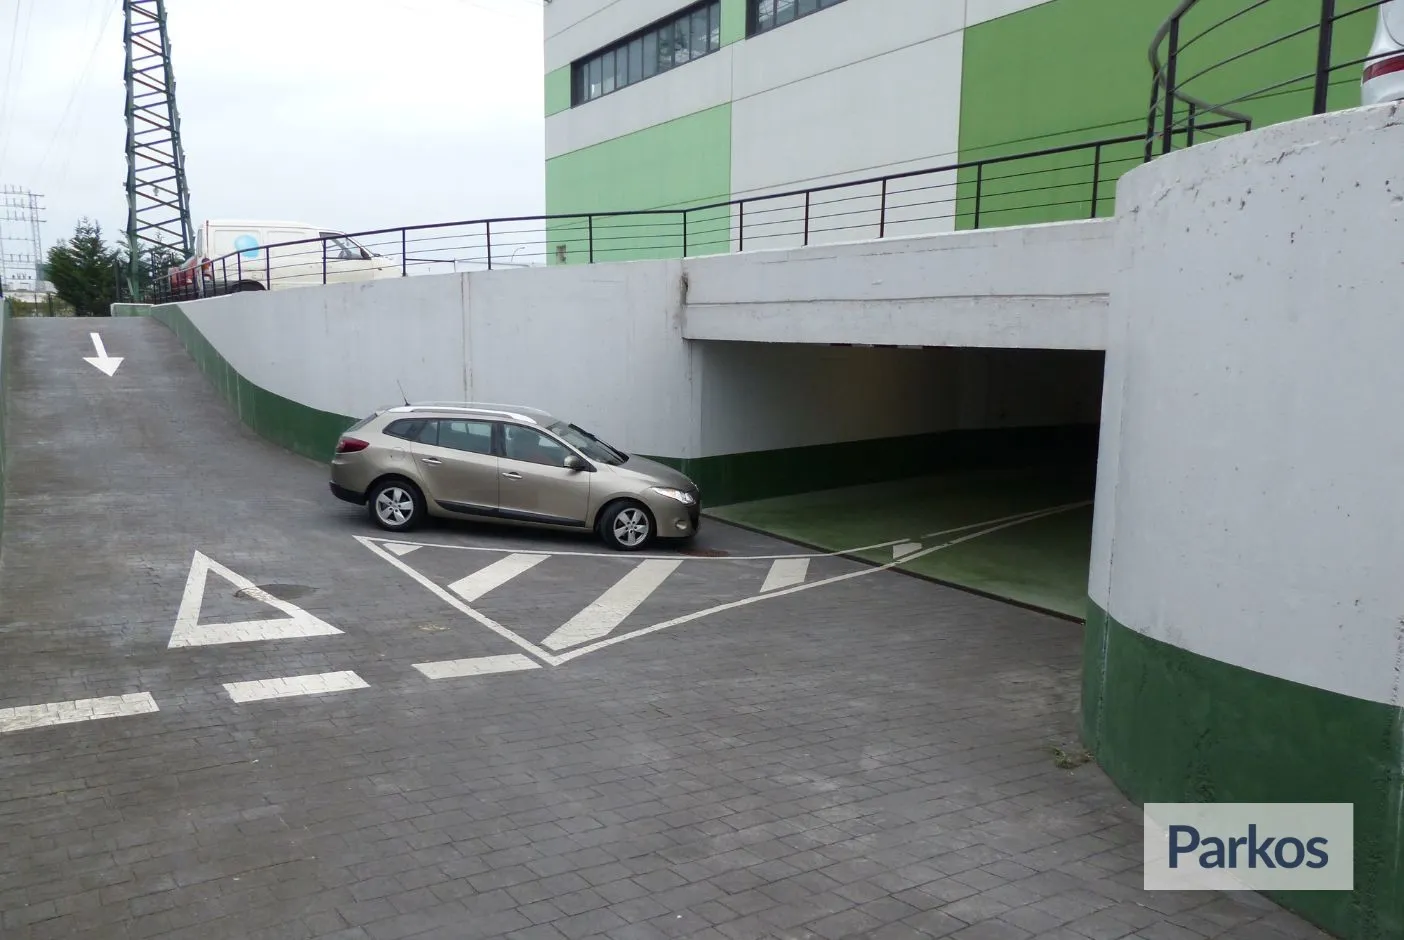 Epark Bilbao - Parking Aeropuerto Bilbao - picture 1